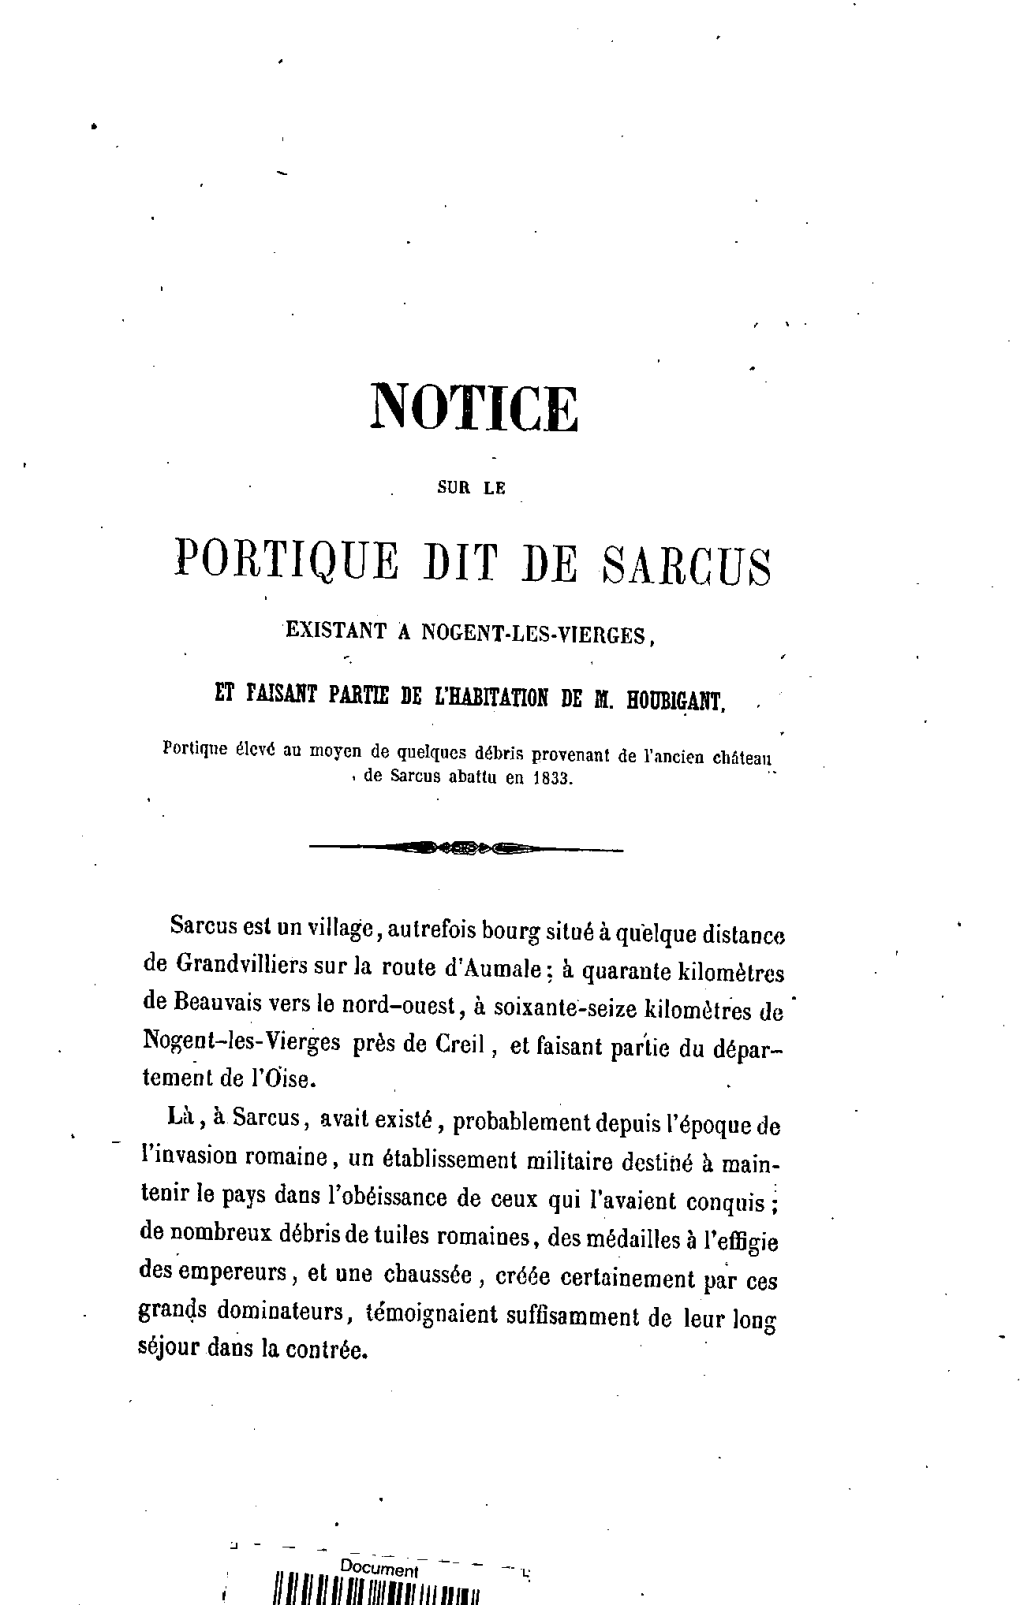 Notice Sur Le Portique Dit De Sarcus Existant a Nogent-Les-Vierges